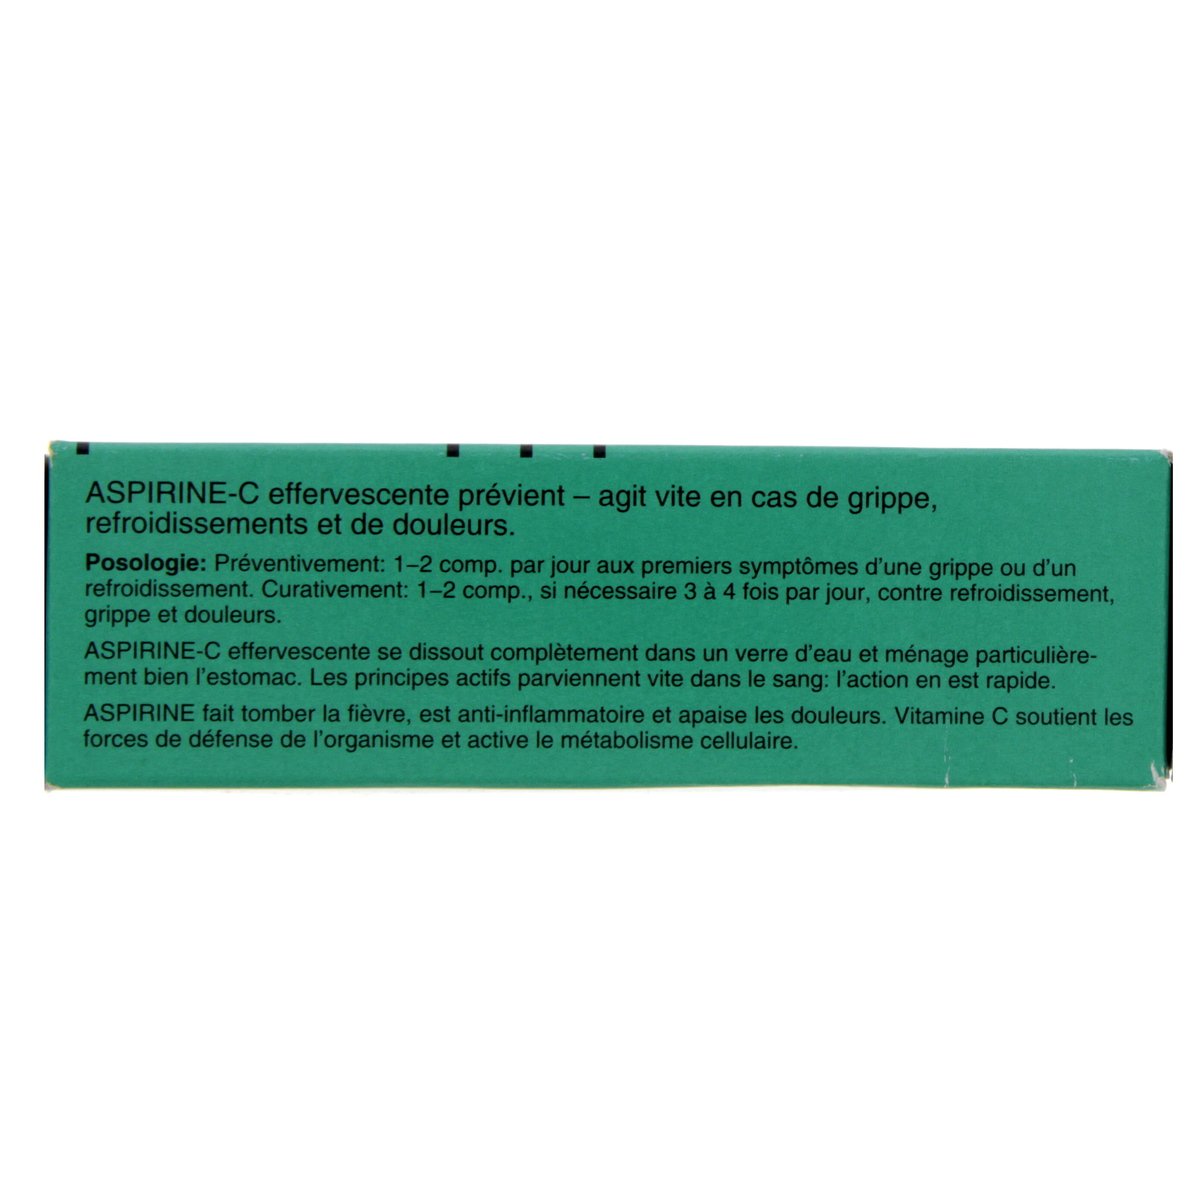 Aspirin Vitamin C Effervescent Tablets 10 pcs